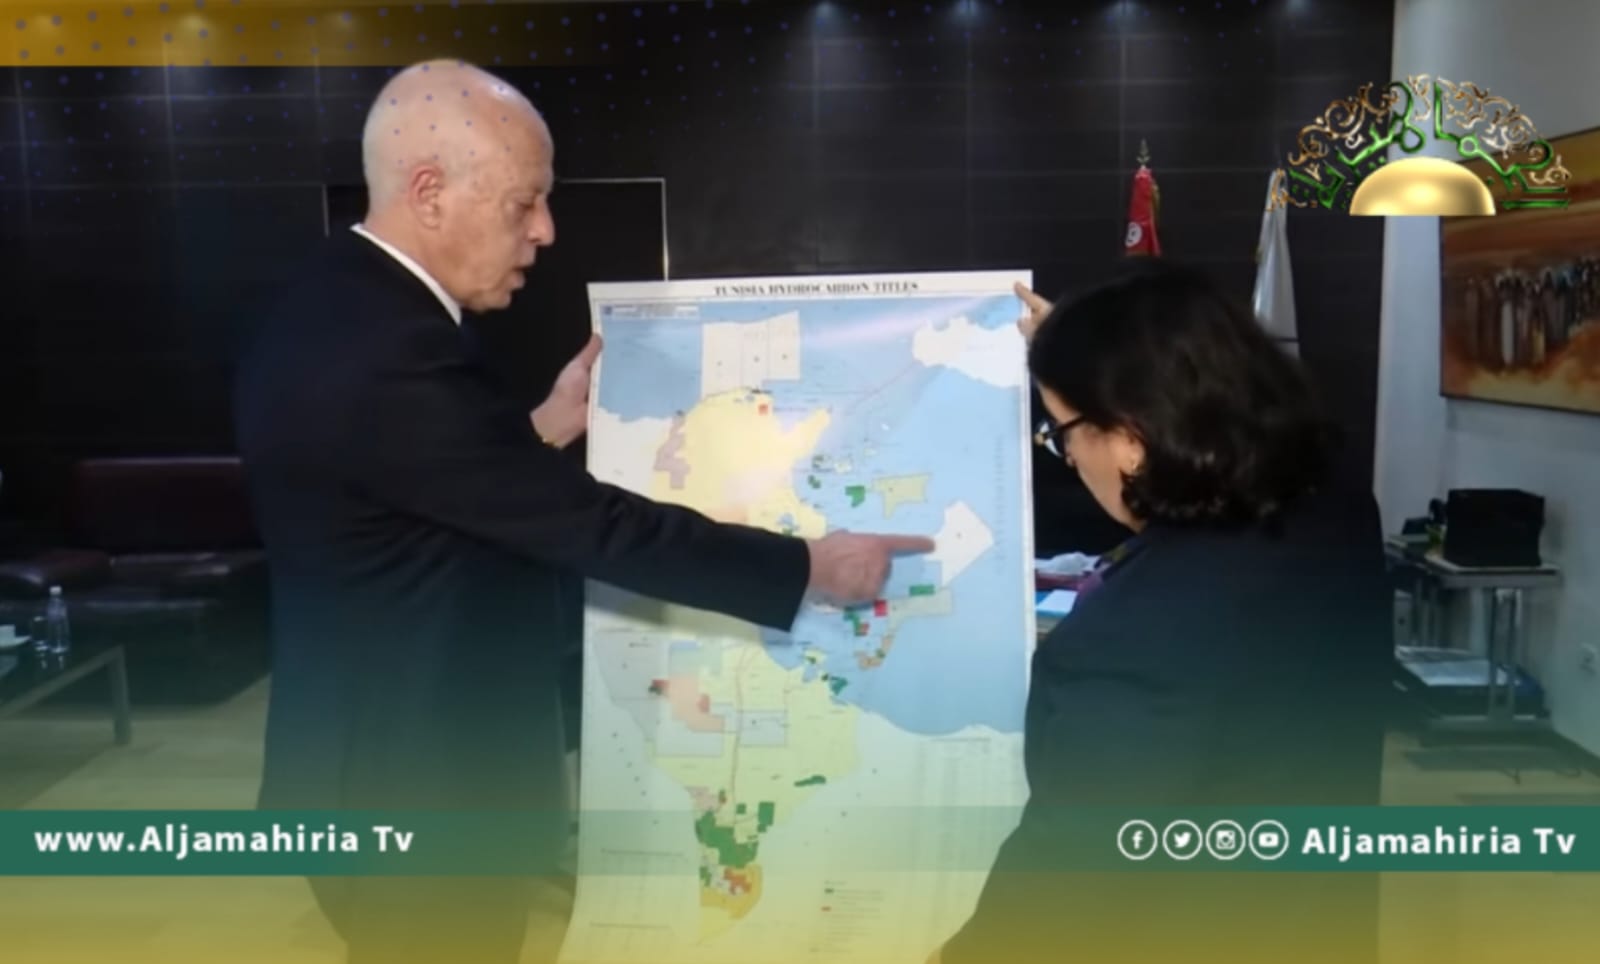 العربيى: ندرس تصريحات الرئيس التونسي حول حقل البوري النفطي والجرف القاري